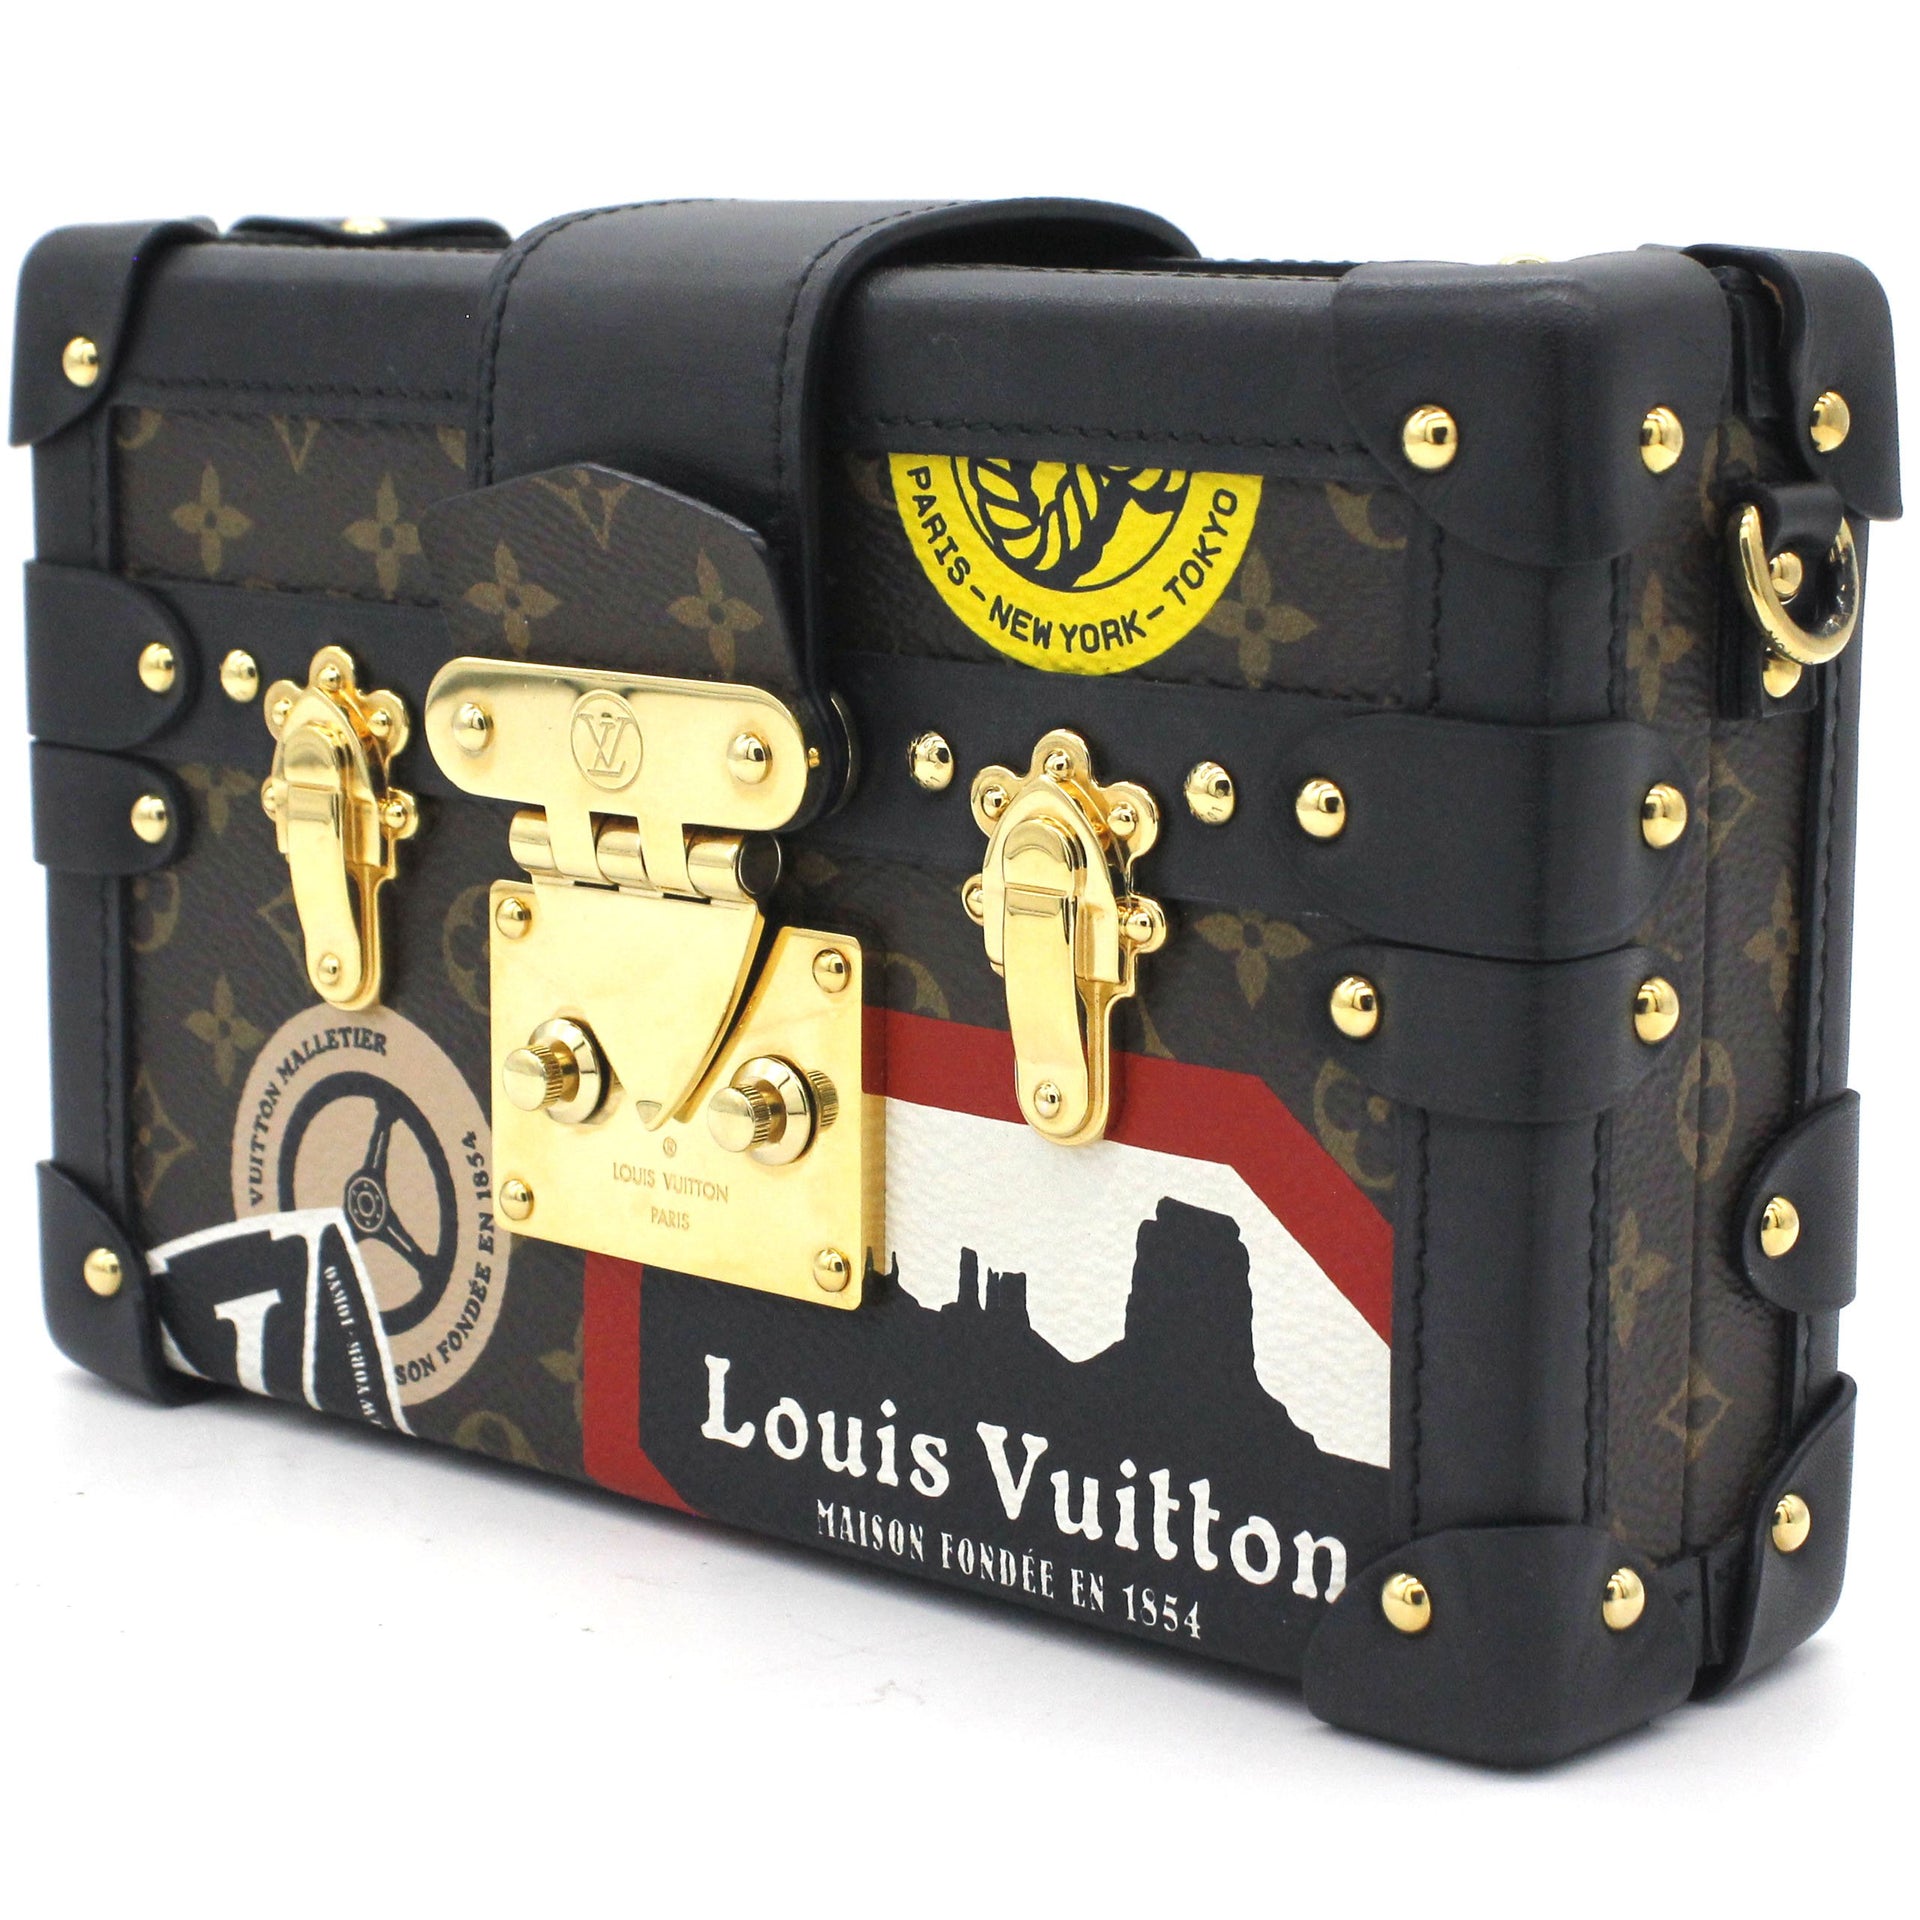 Louis Vuitton Petite Malle Handbag Limited Edition Since 1854